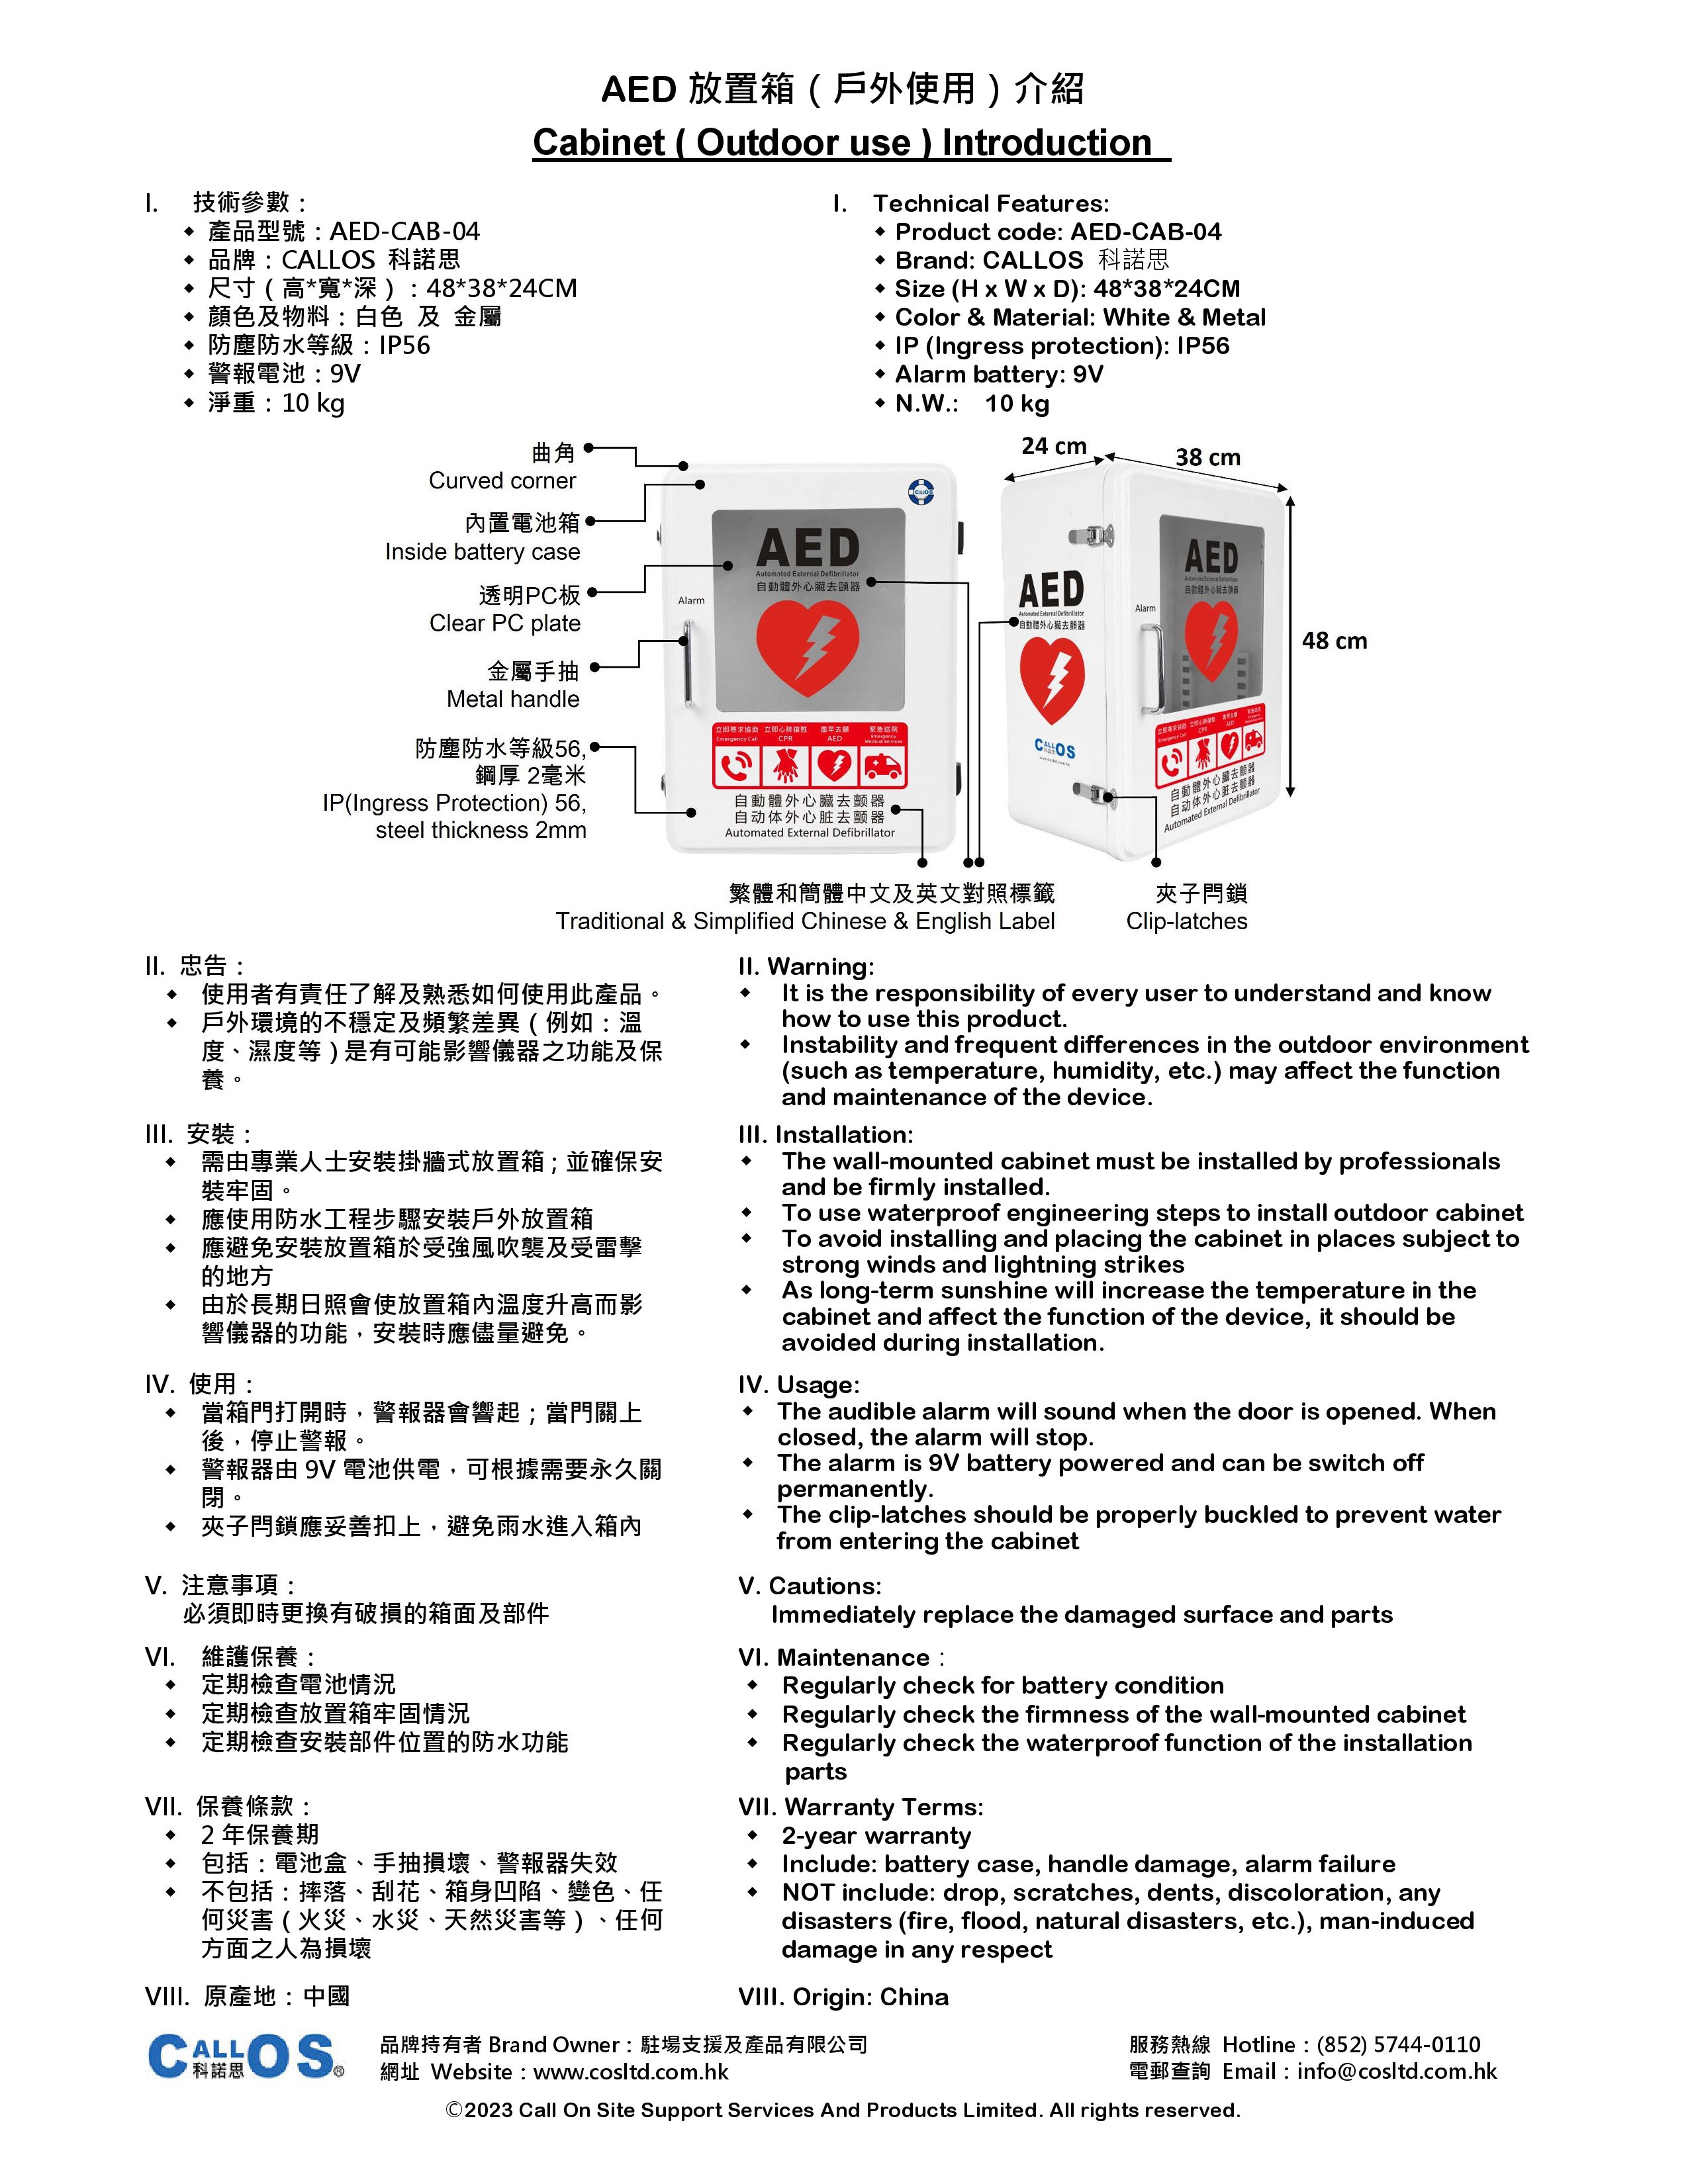 Cabinet AED-CAB-04